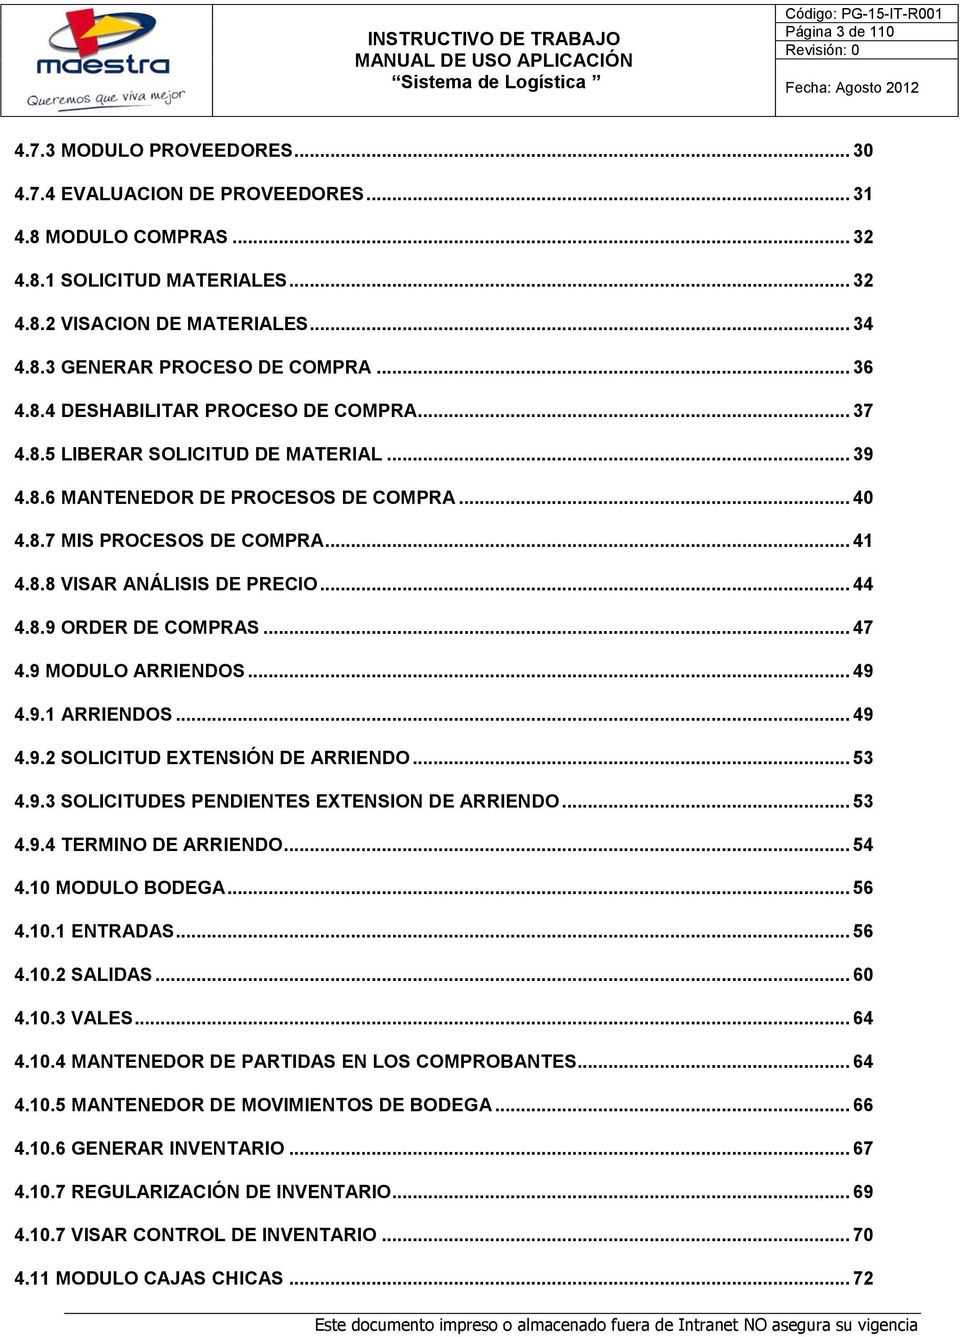 .. 41 4.8.8 VISAR ANÁLISIS DE PRECIO... 44 4.8.9 ORDER DE COMPRAS... 47 4.9 MODULO ARRIENDOS... 49 4.9.1 ARRIENDOS... 49 4.9.2 SOLICITUD EXTENSIÓN DE ARRIENDO... 53 4.9.3 SOLICITUDES PENDIENTES EXTENSION DE ARRIENDO.